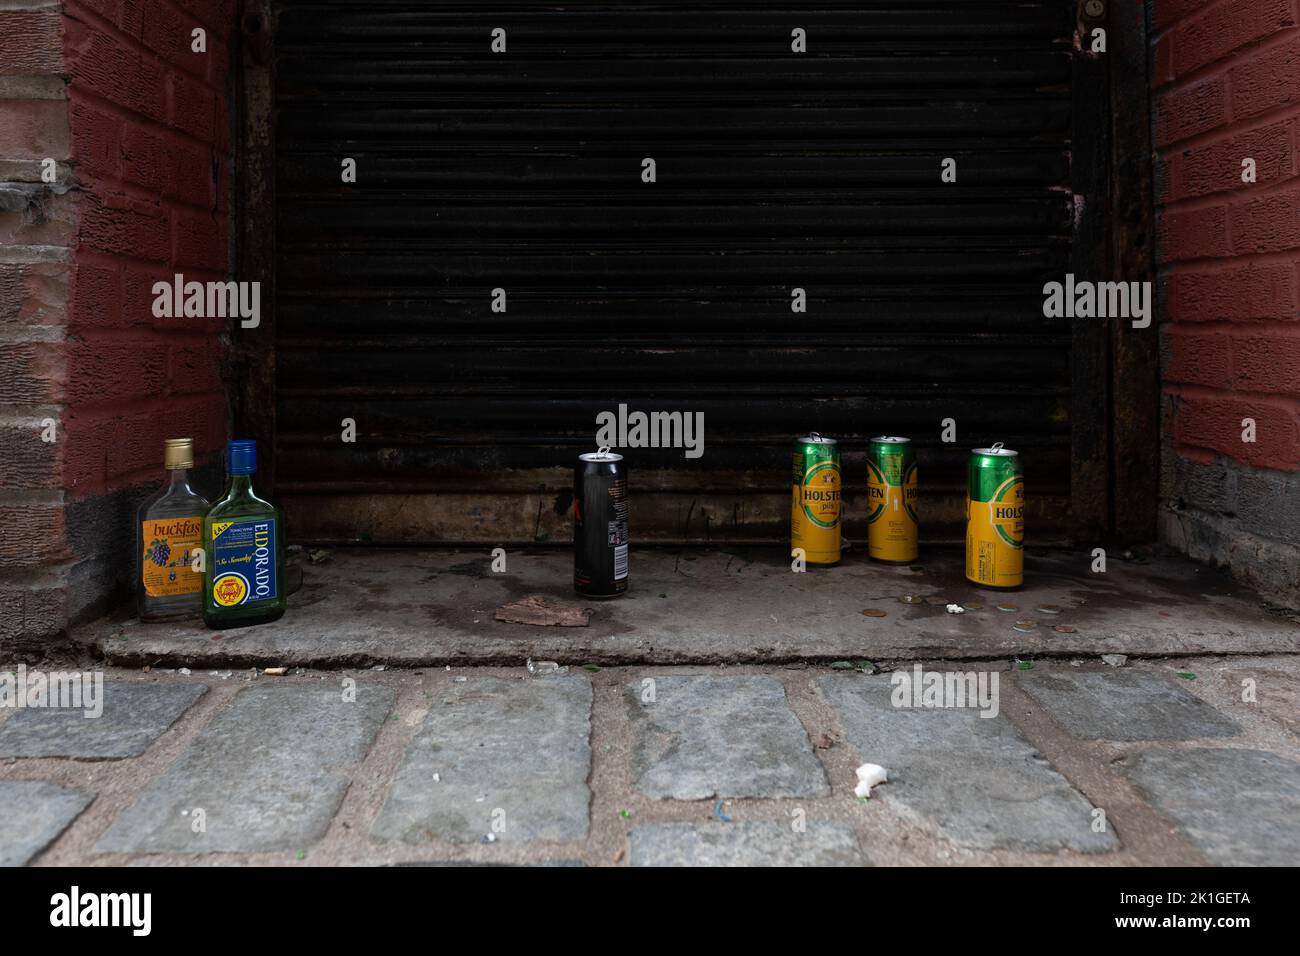 Alcool Ecosse - vide buckfast, Eldorado, cidre et Holsten Pils lager boîtes dans l'allée arrière porte, centre ville de Glasgow, Écosse, Royaume-Uni Banque D'Images